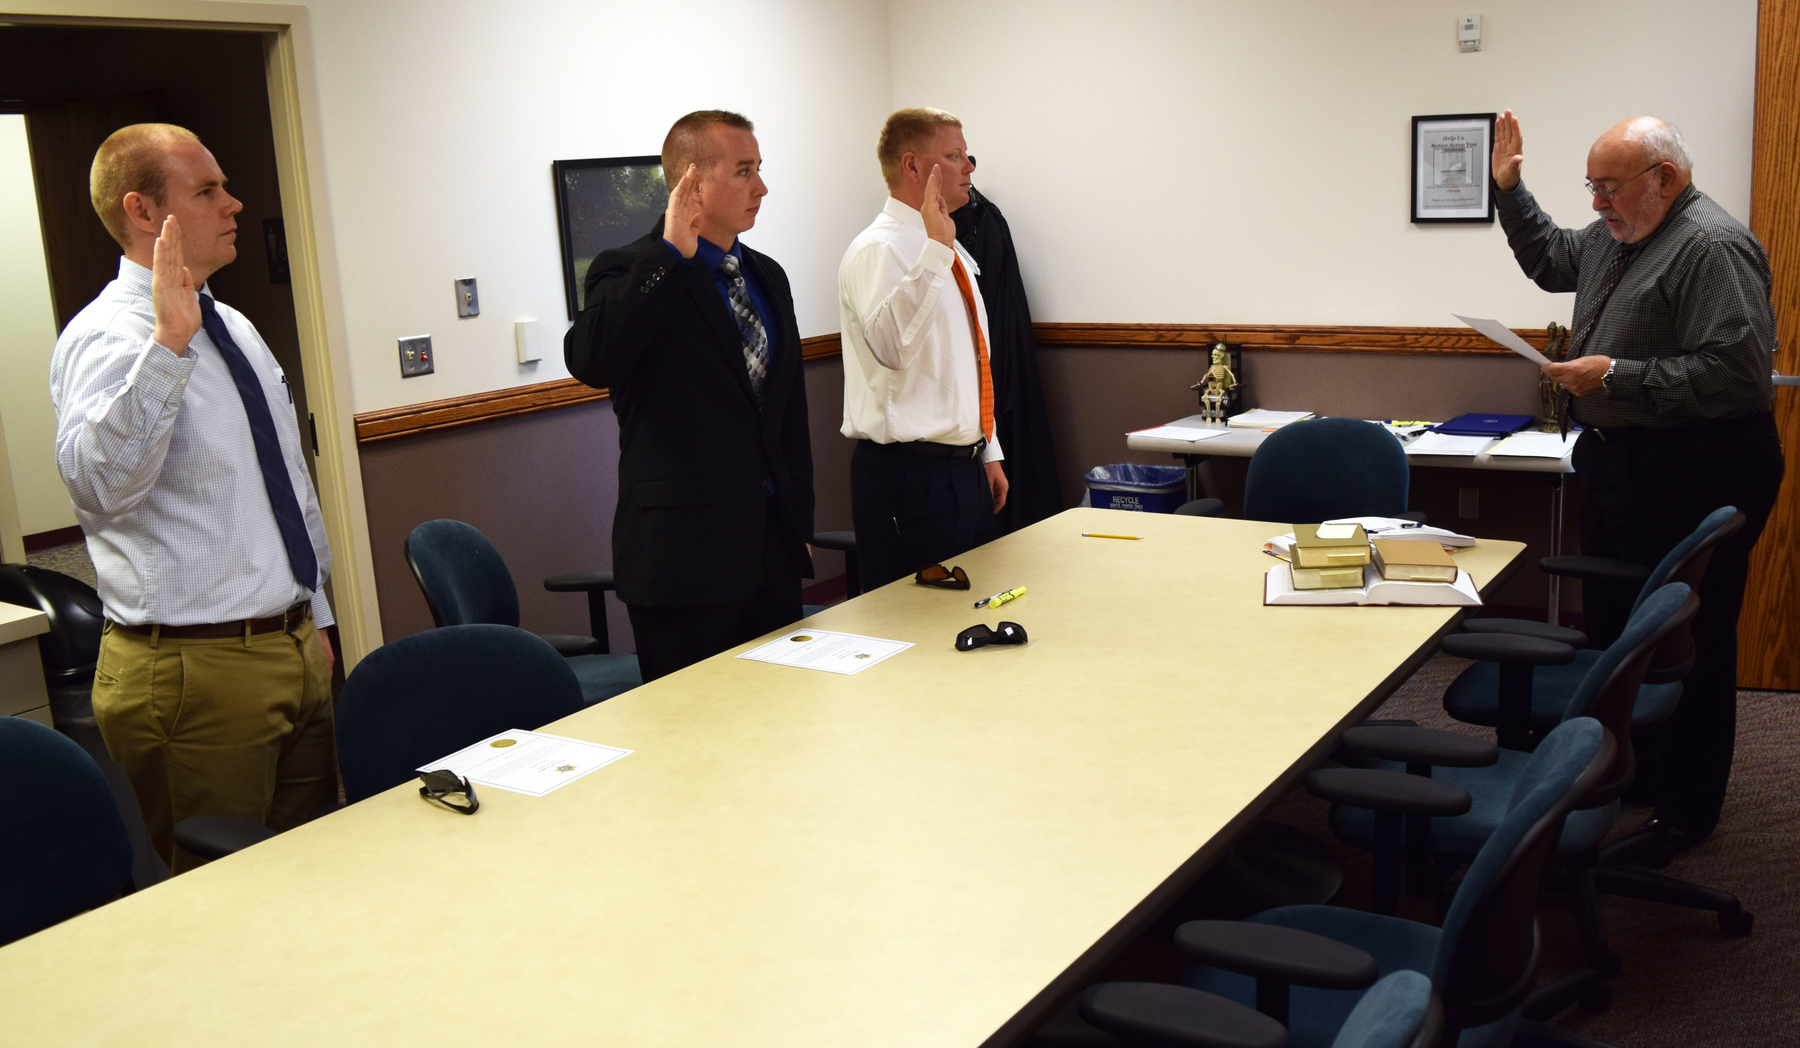 Drew Osterholt, Dylan Short and Tyrel Ledbetter taking their oaths of office.